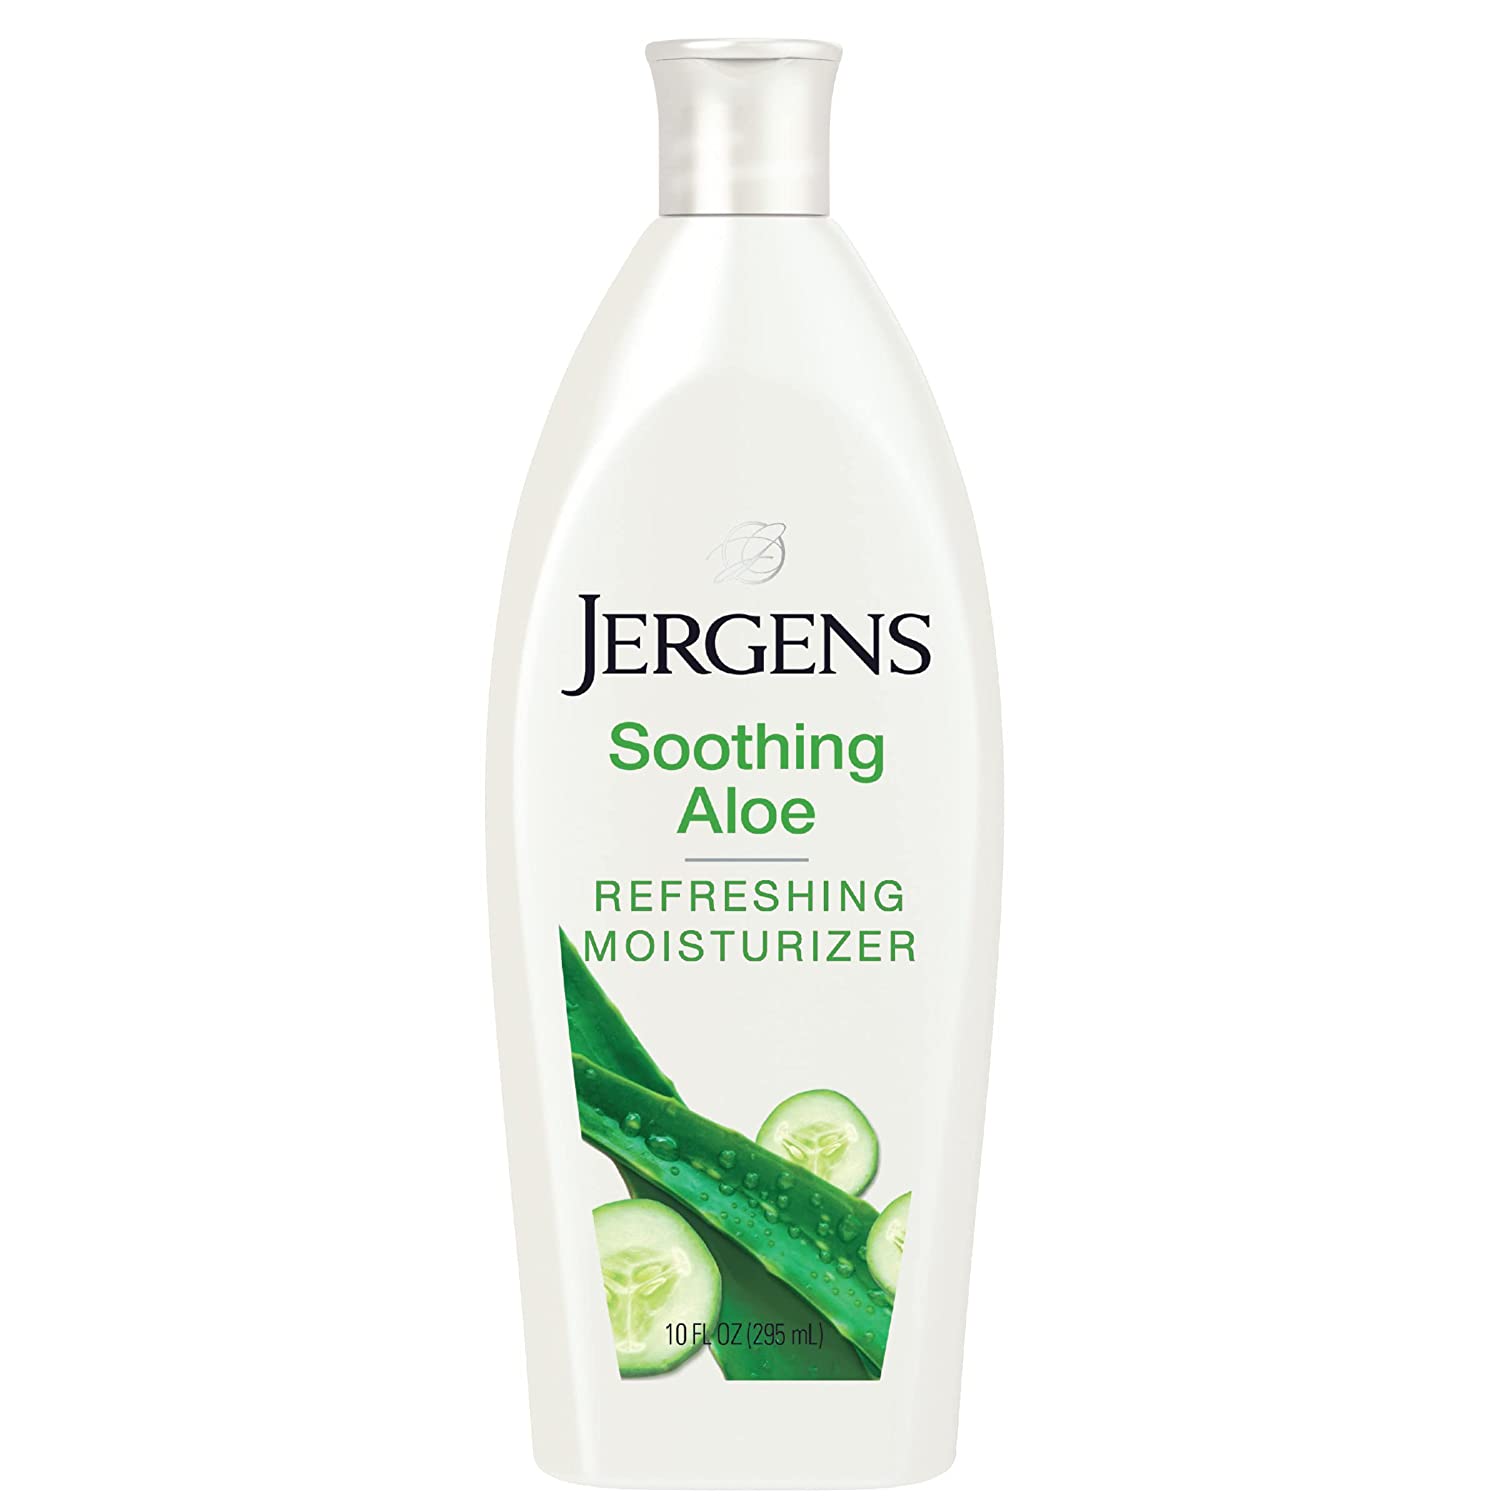 JERGENS Soothing/Refreshing Aloe Moisturizer